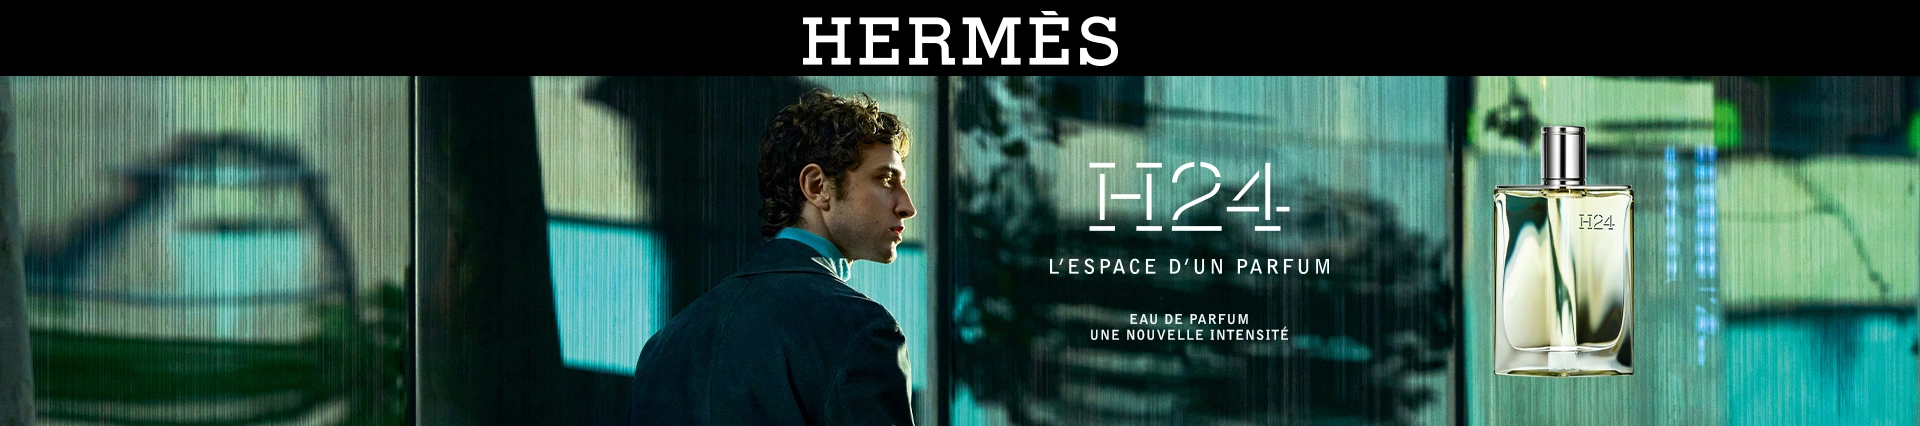 Hermès - Univers homme